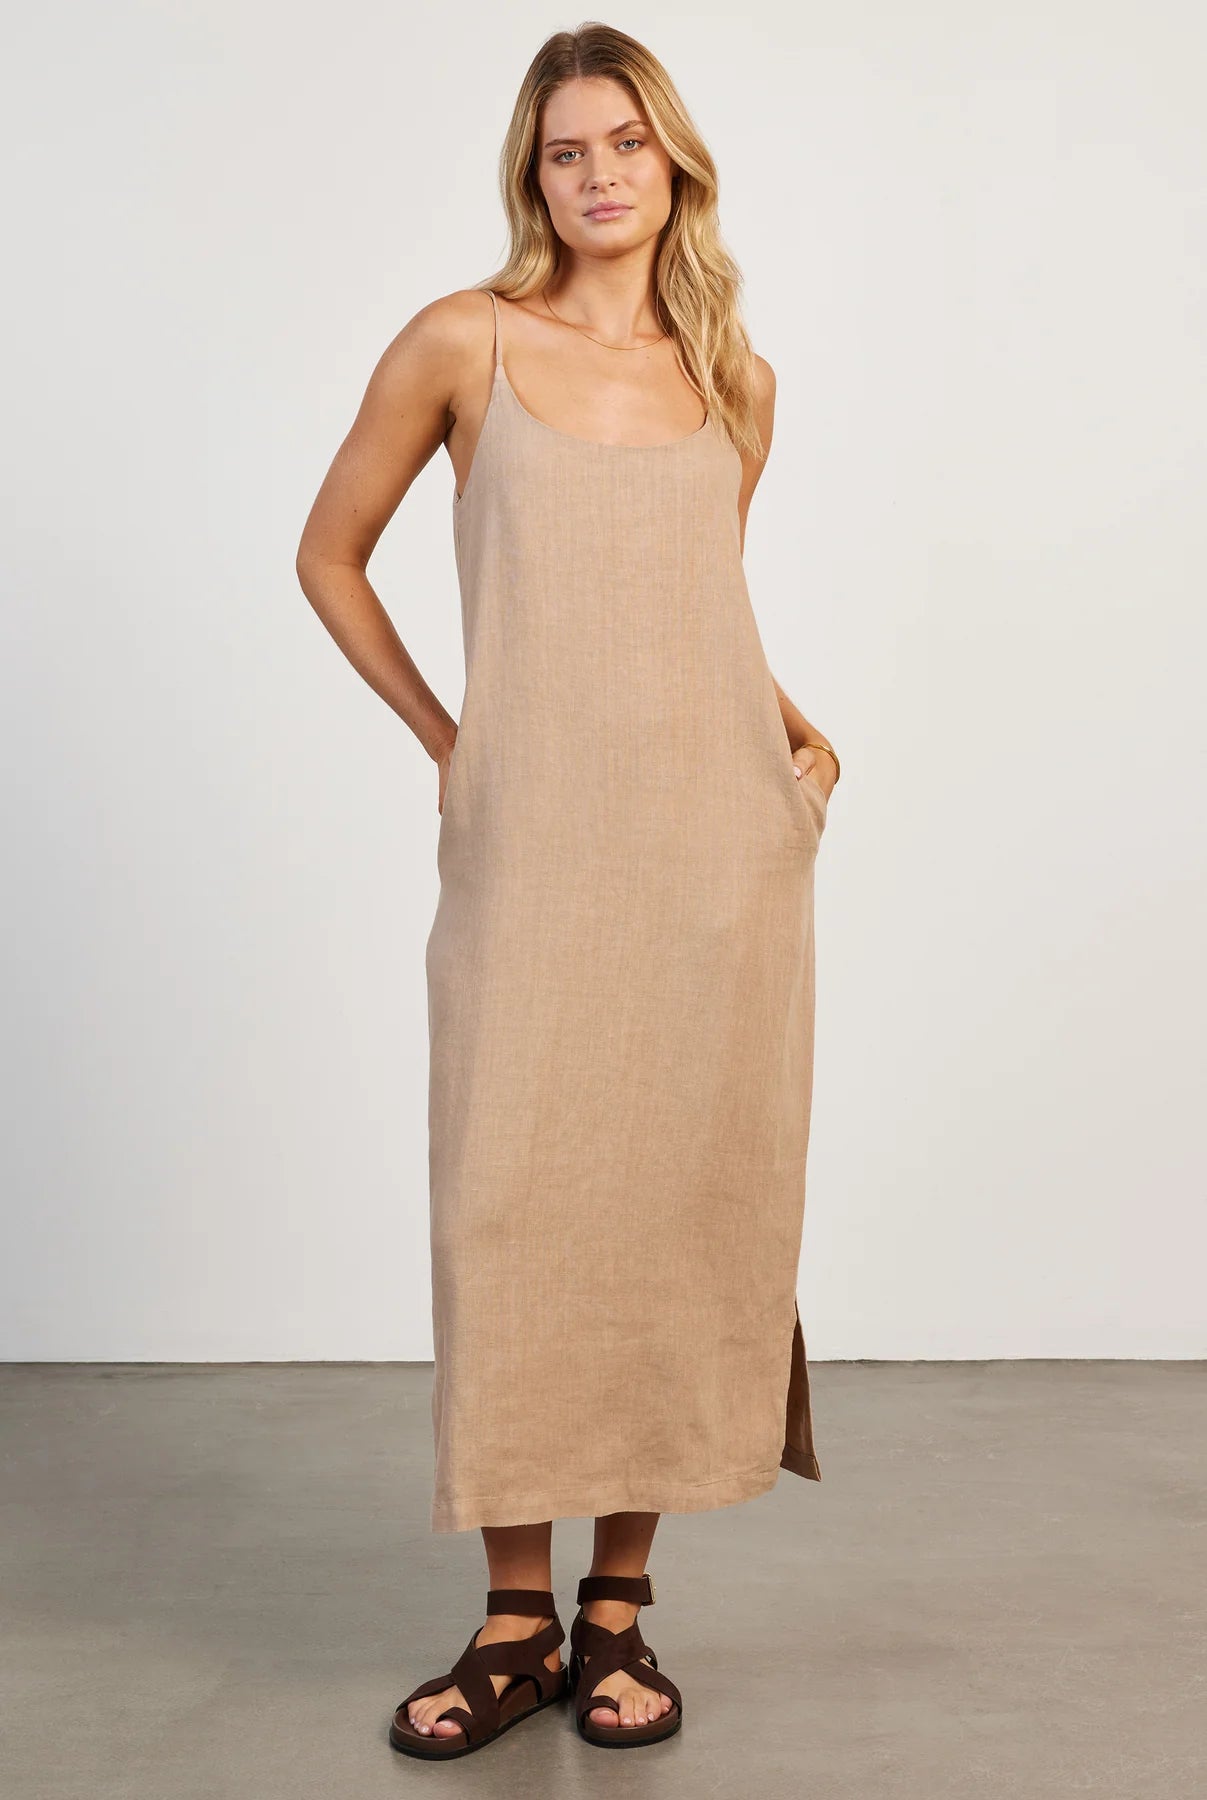 Essential Linen Slip Dress in Warm Sand